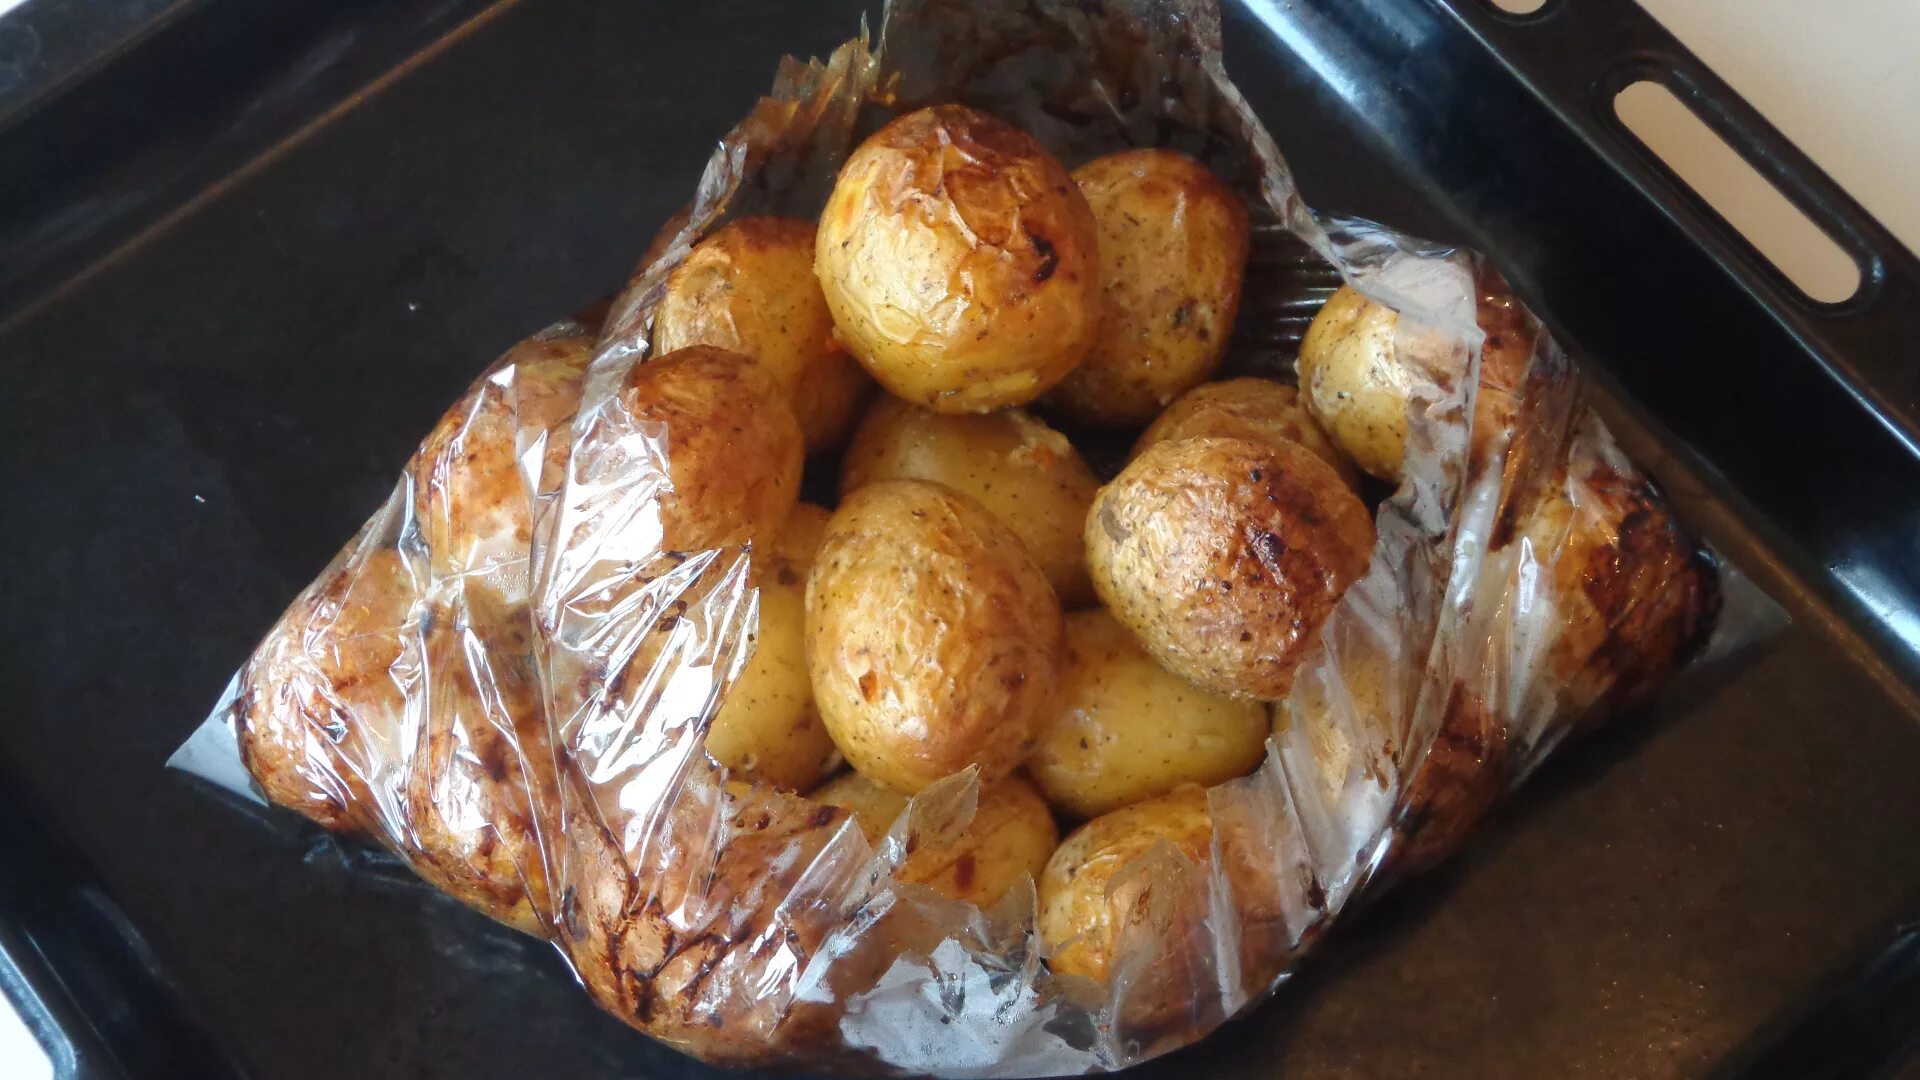 Хлеб в духовке в рукаве. Картошка в пакете в духовке. Картошка в пакете для запекания в духовке. Картофель в пакете для запекания в духовке. Картофель в пакете в духовке.